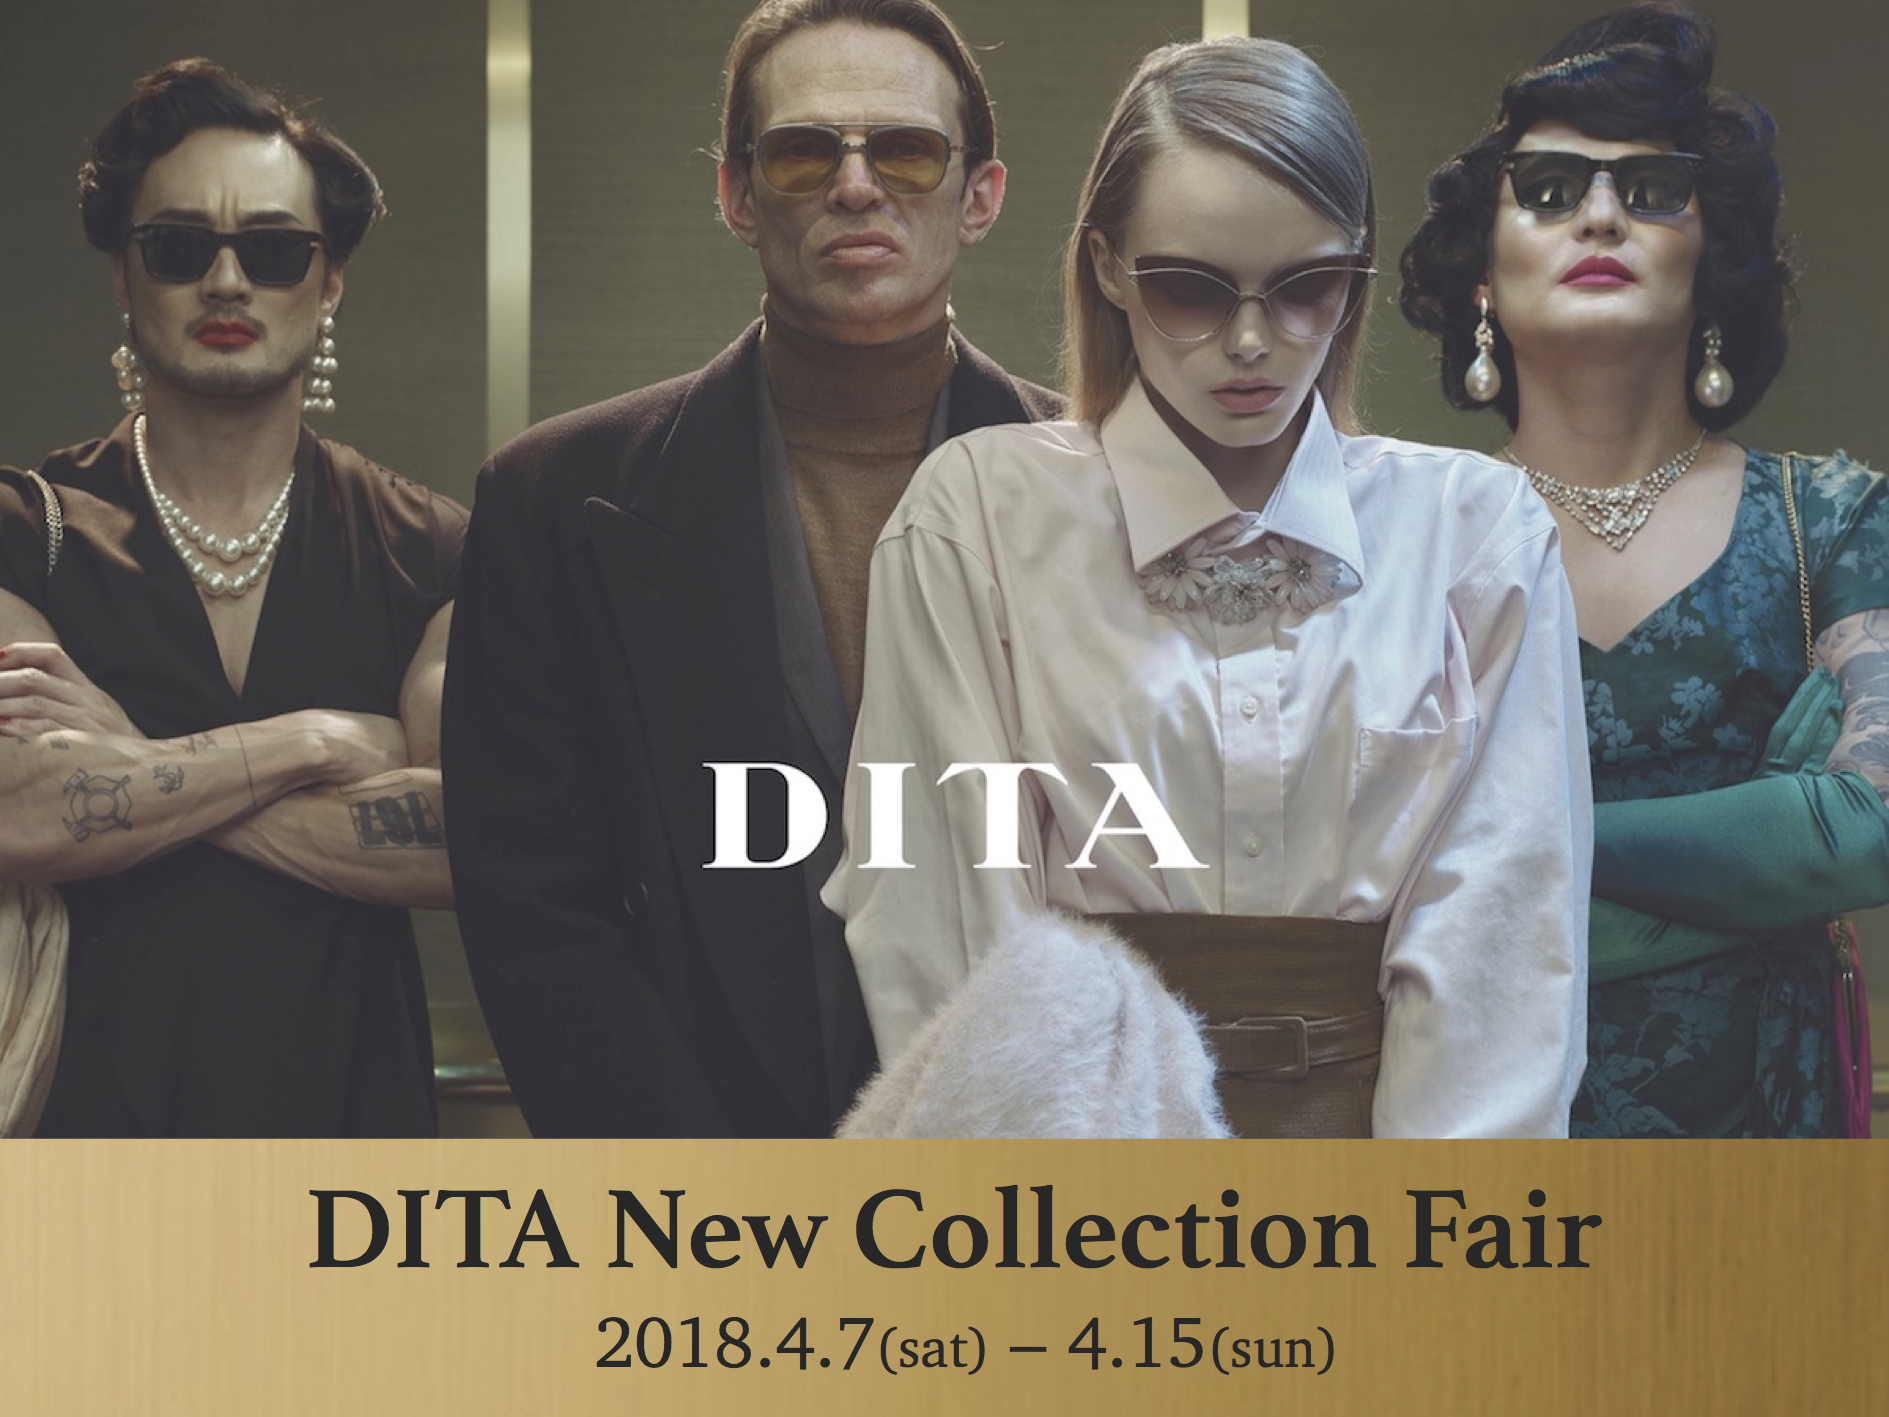 明日からDITA New Collection Fair 始まります